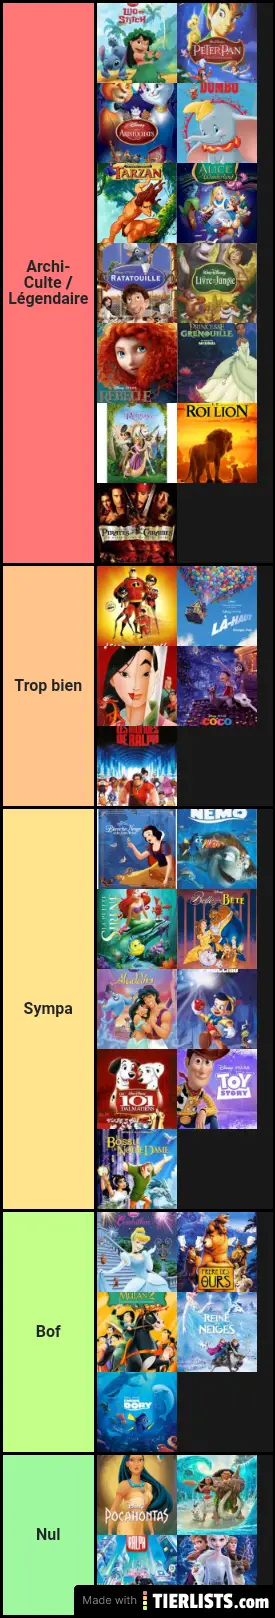 Tierlist Disney Movies